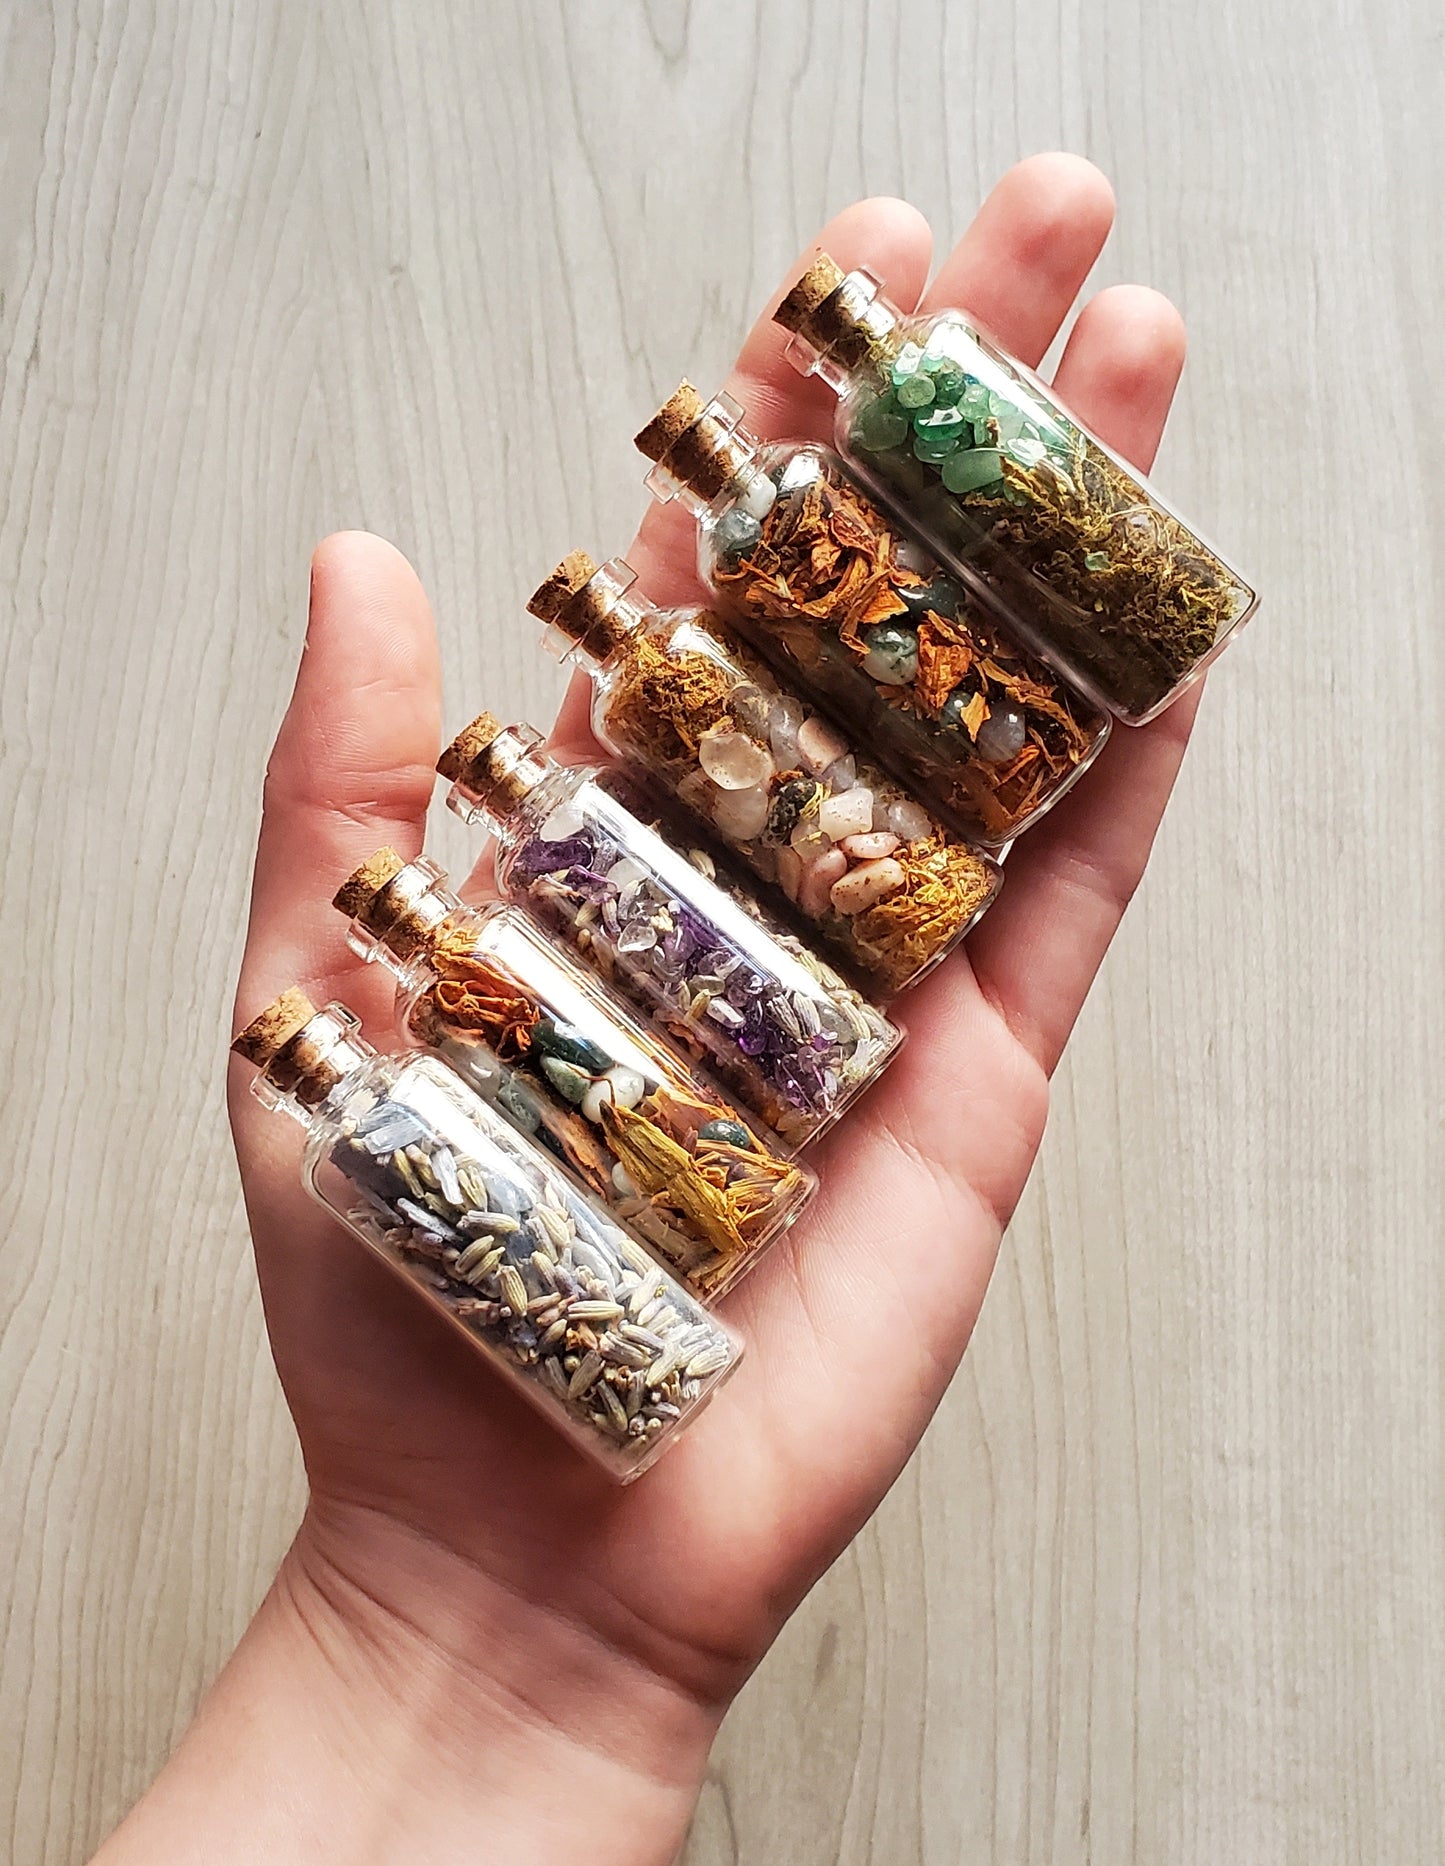 Mini Crystal Herb Jars